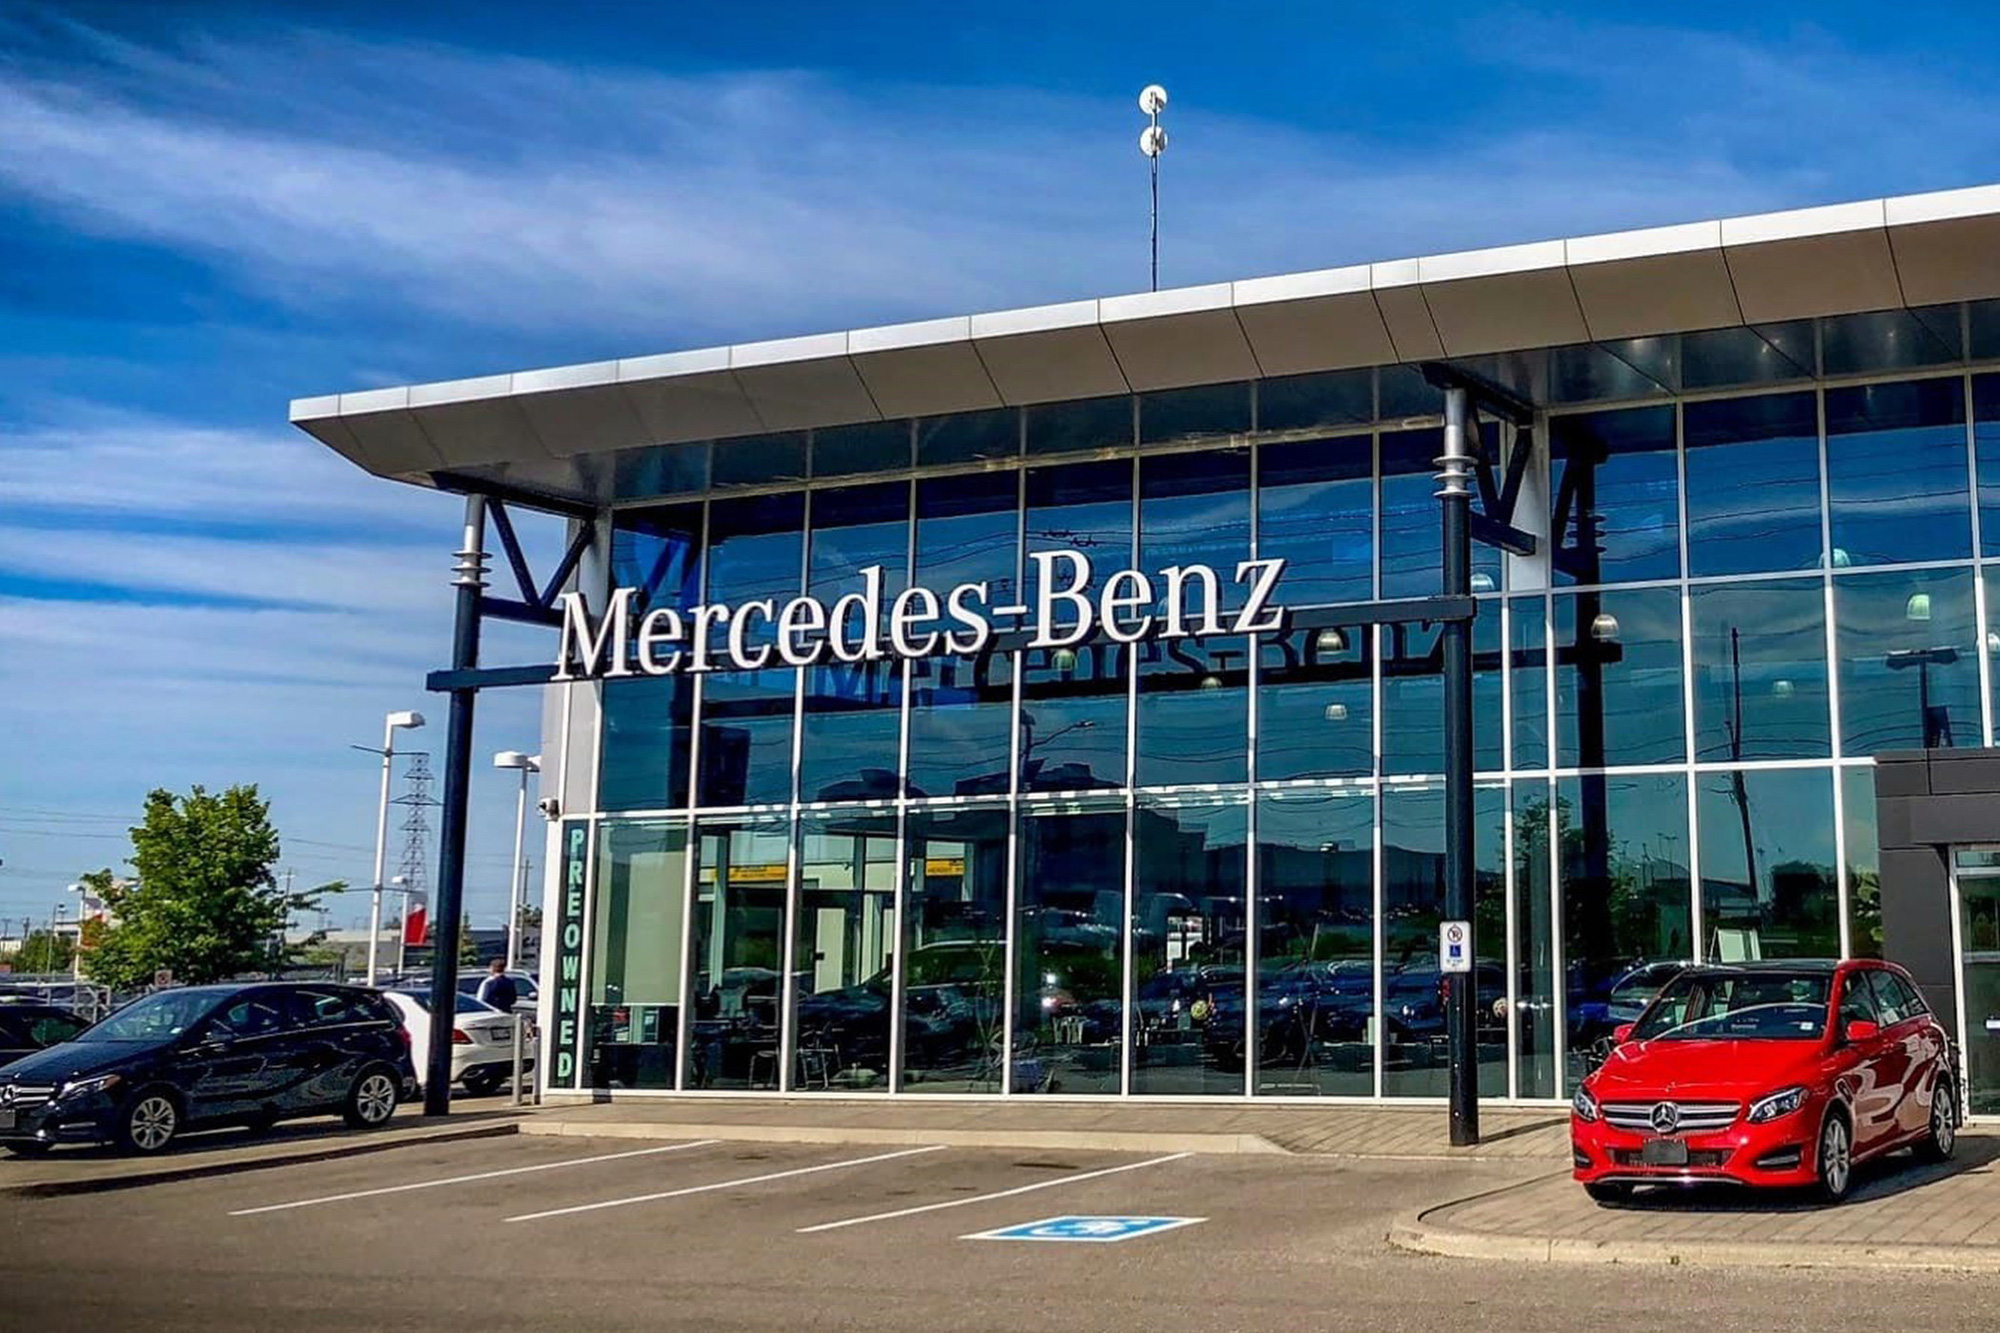 Cấm đại lý mặc cả với khách hàng, Mercedes-Benz bị chính hệ thống đại lý kiện ngược